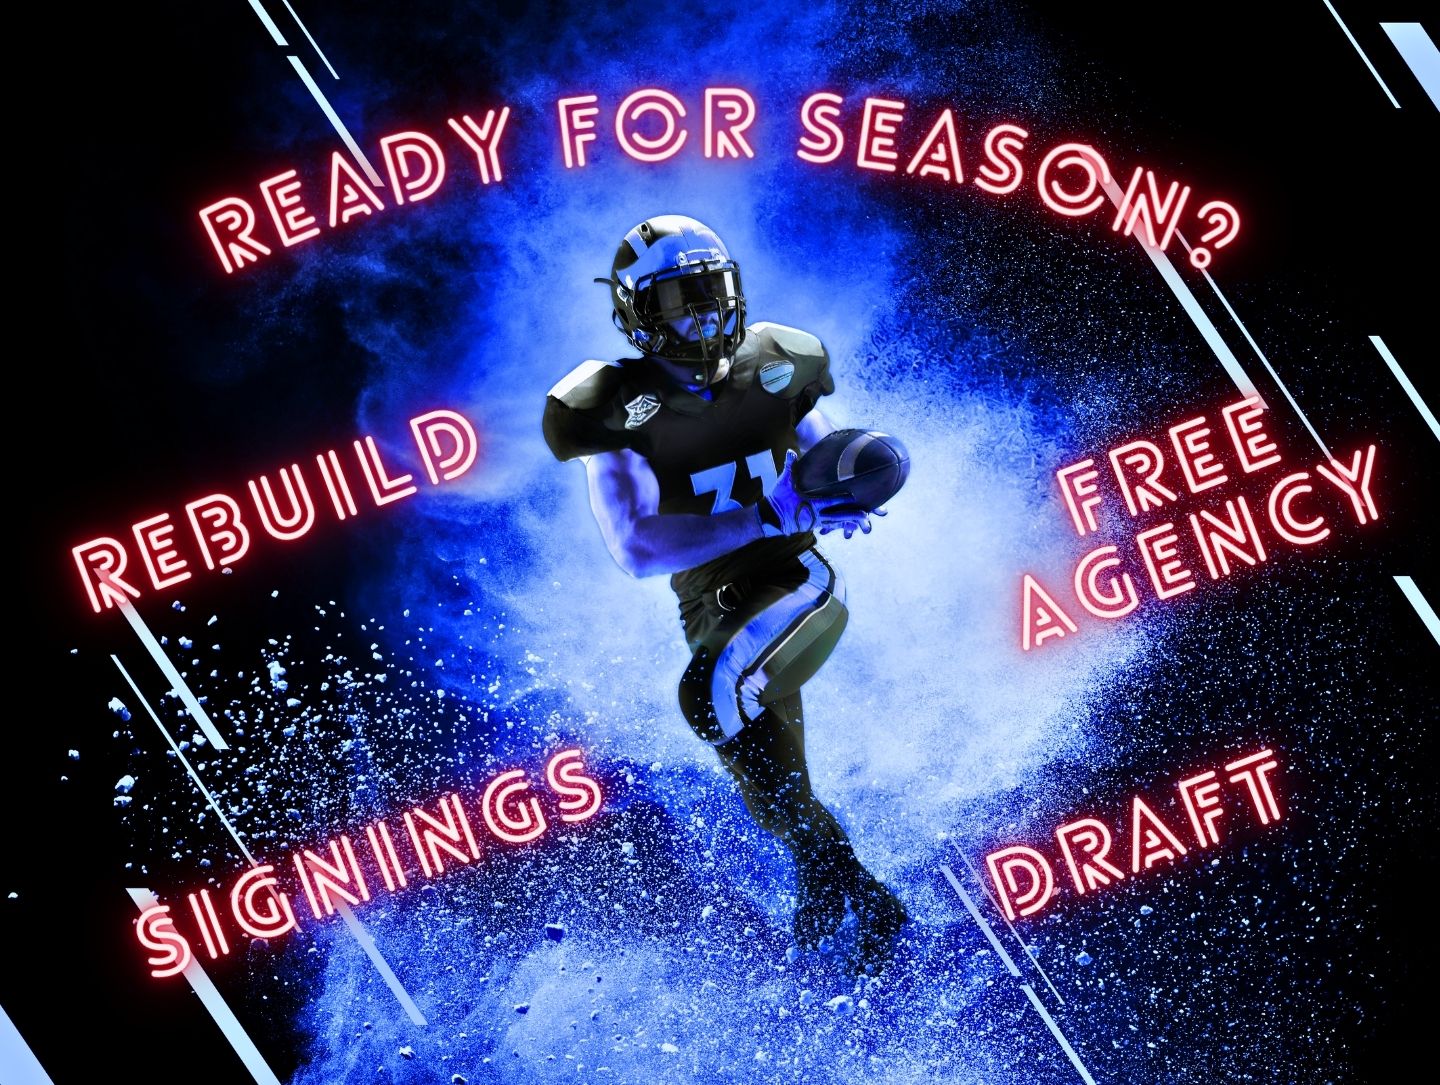 Ein Football-Spieler in Motion, um ihn drum herum stehen die Wörter &quot;Ready for Season?, Rebuild, Draft, Free Agency